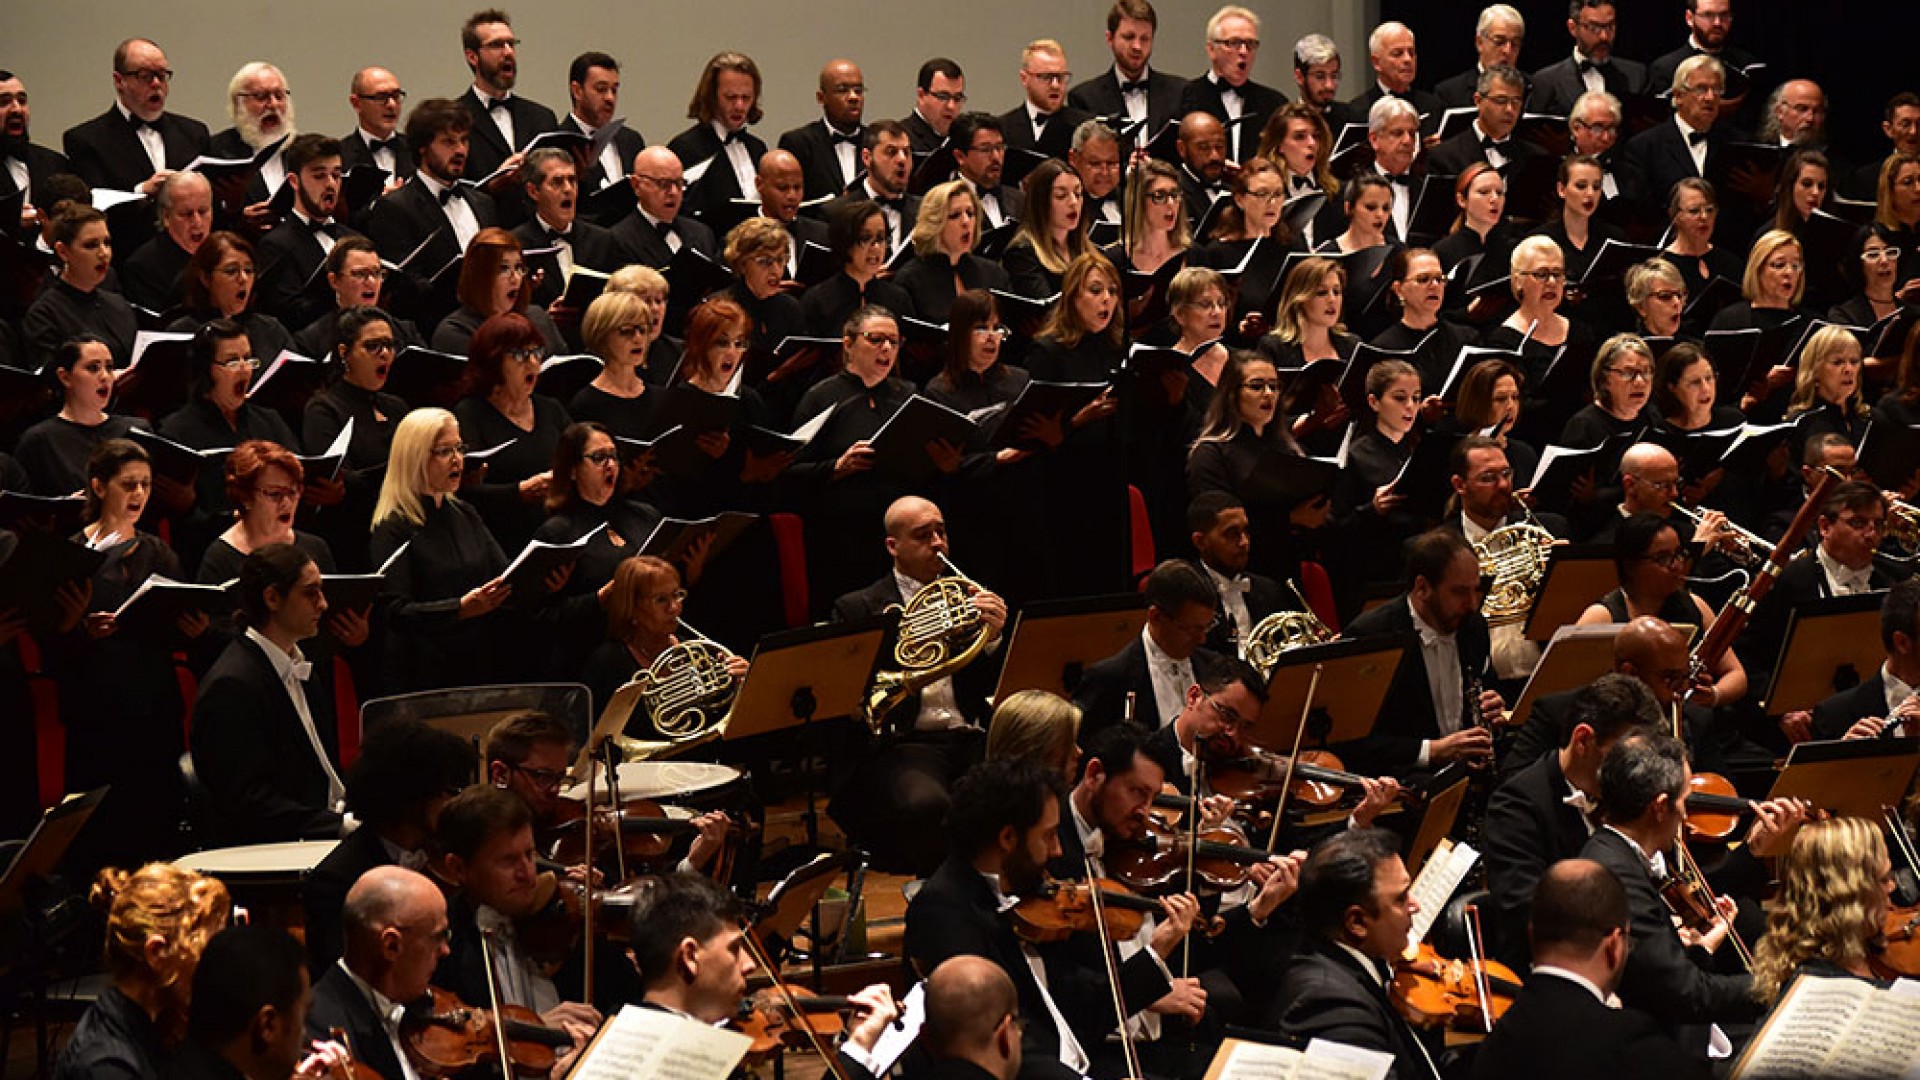 Ospa e seu Coro Sinfônico apresentam o Réquiem alemão de Brahms - OSPA -  Orquestra Sinfônica de Porto Alegre